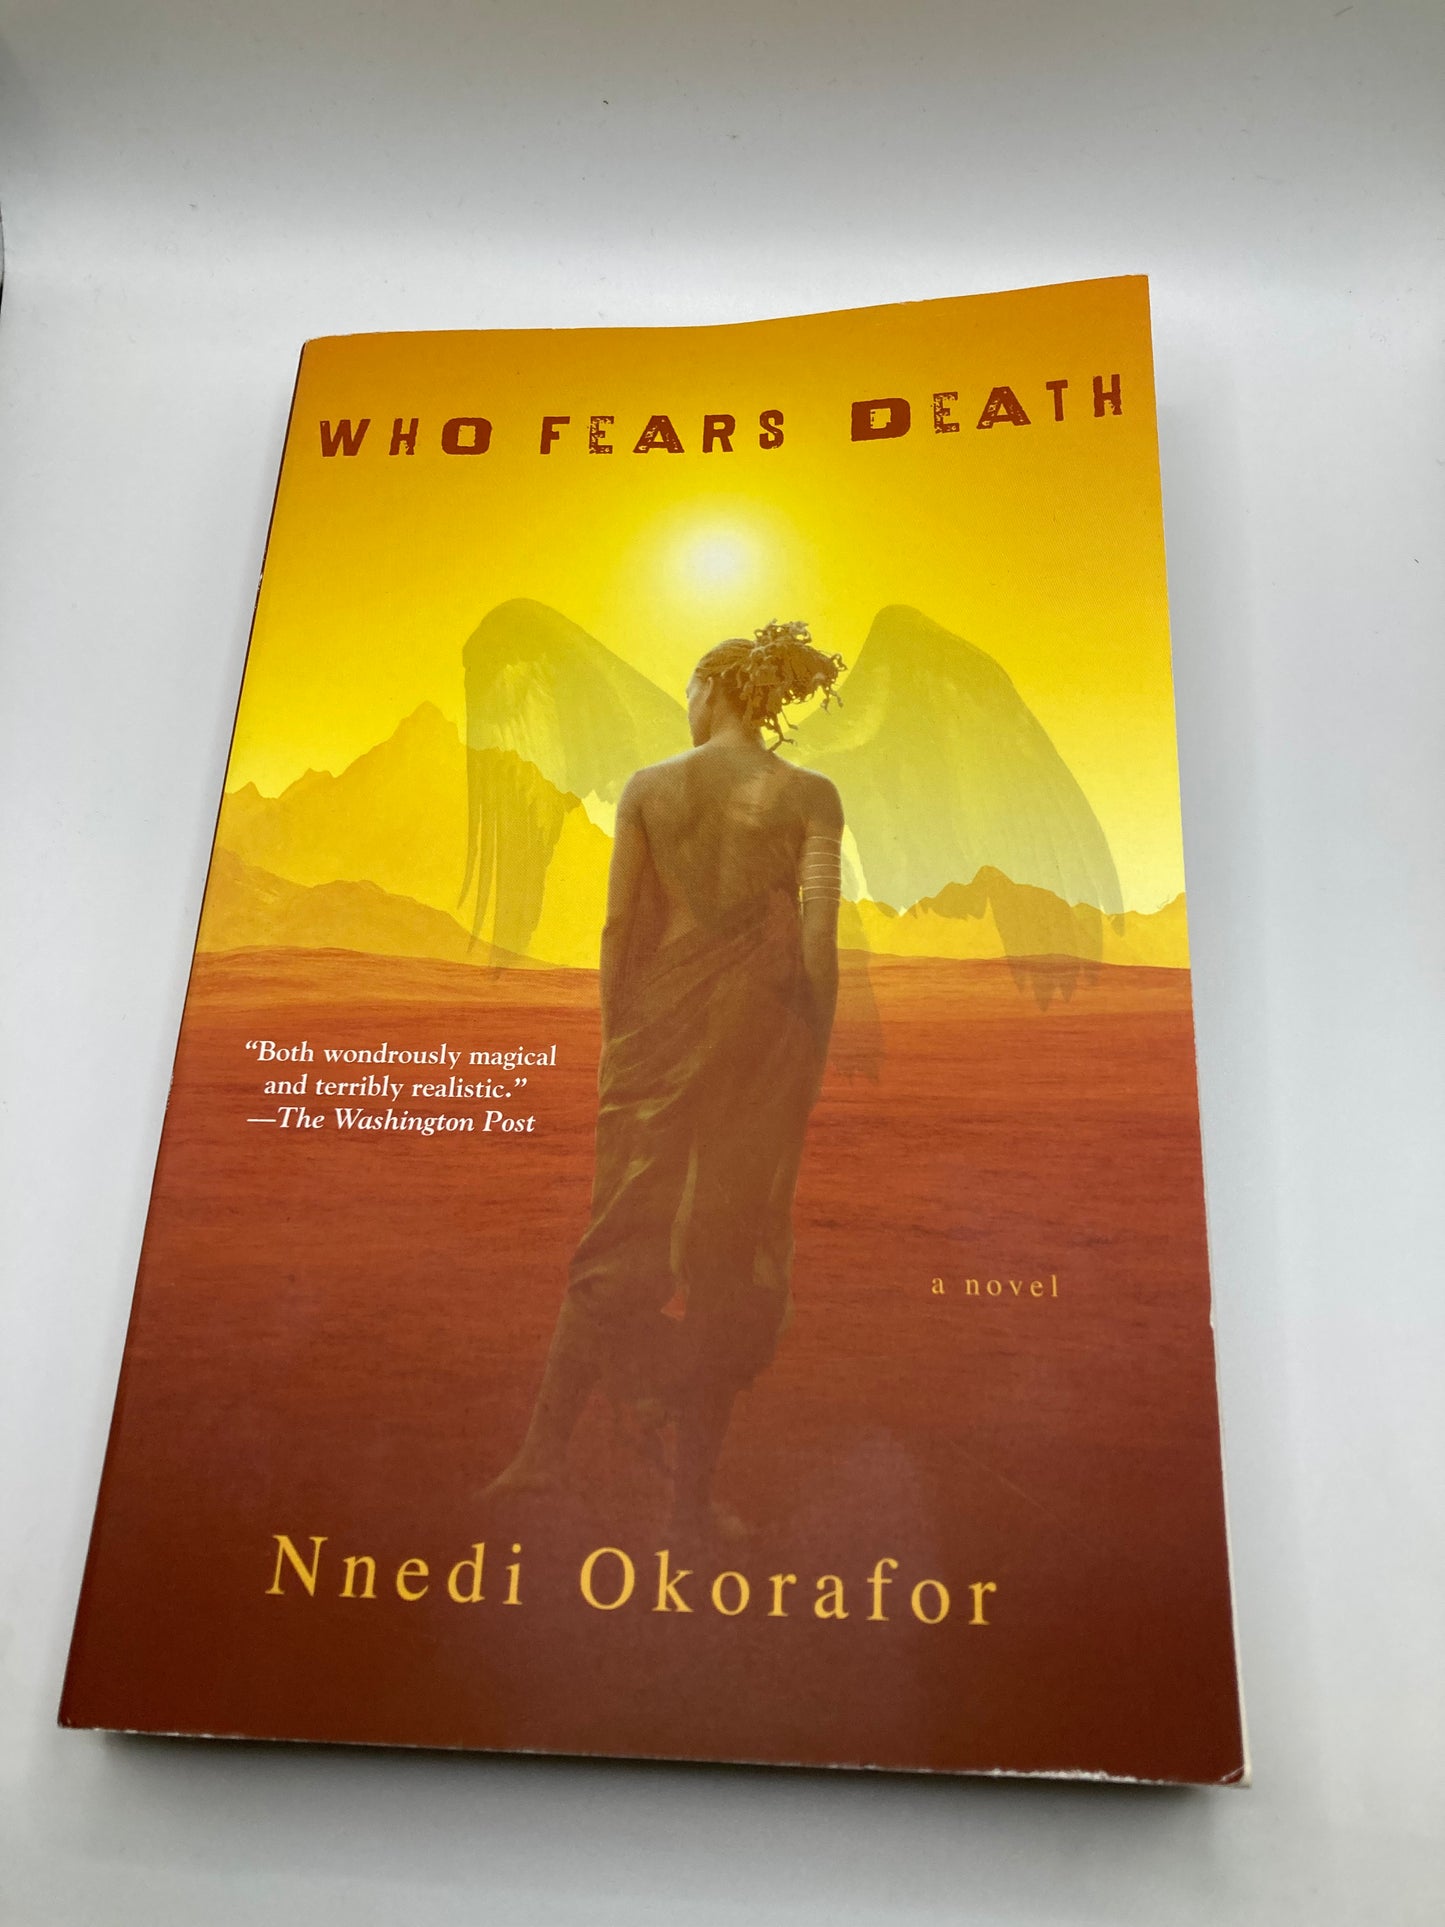 Who Fears Death by Nnedi Okorafor